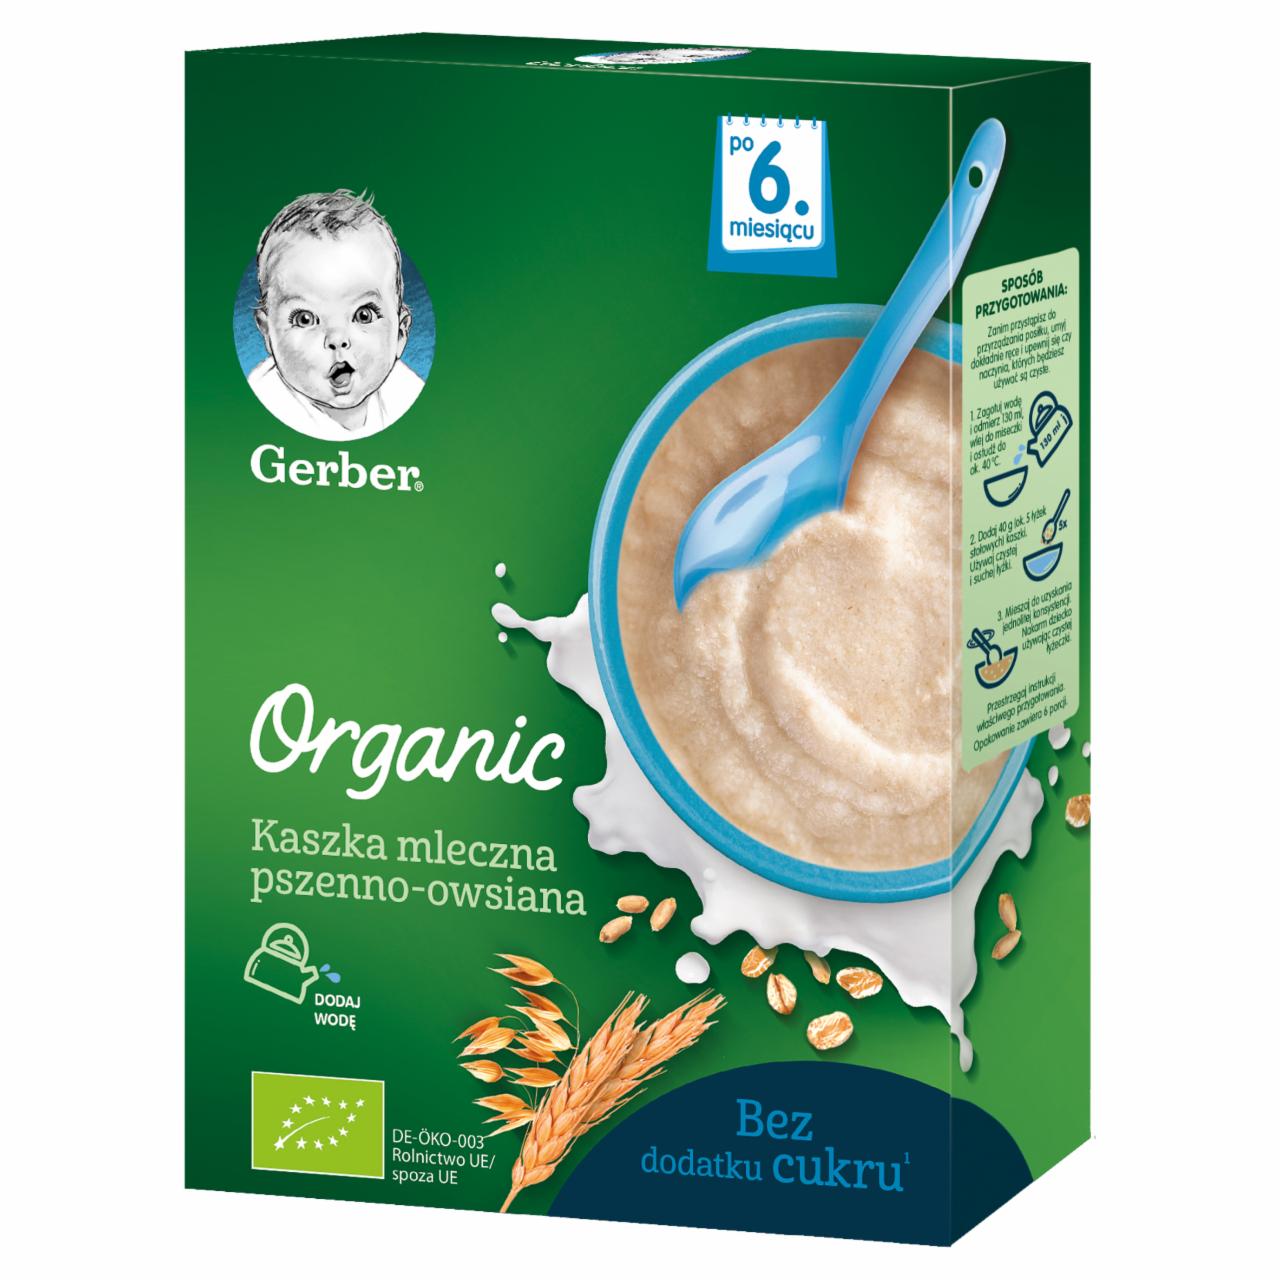 Zdjęcia - Gerber Organic Kaszka mleczna pszenno-owsiana dla niemowląt po 6. miesiącu 240 g